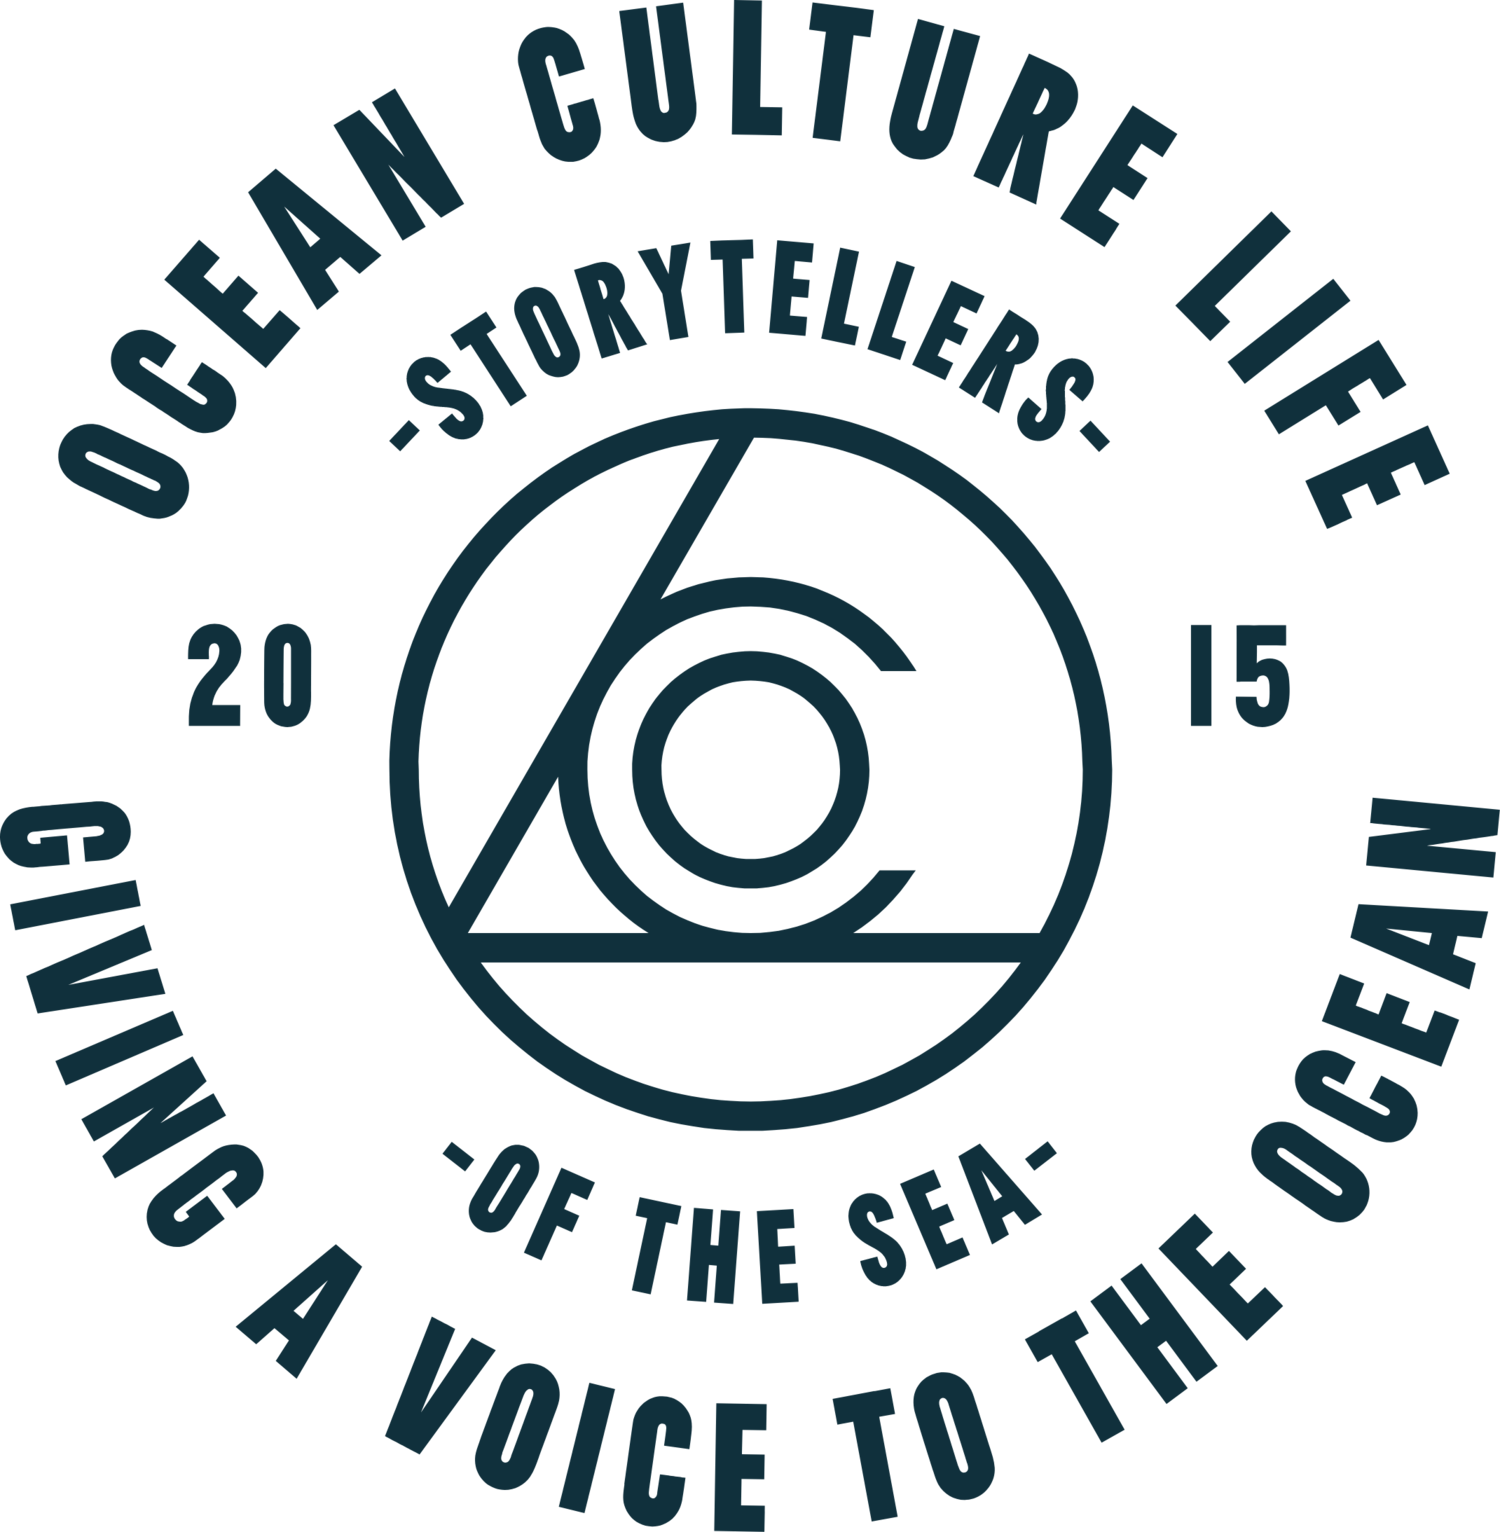 Ocean Culture Life